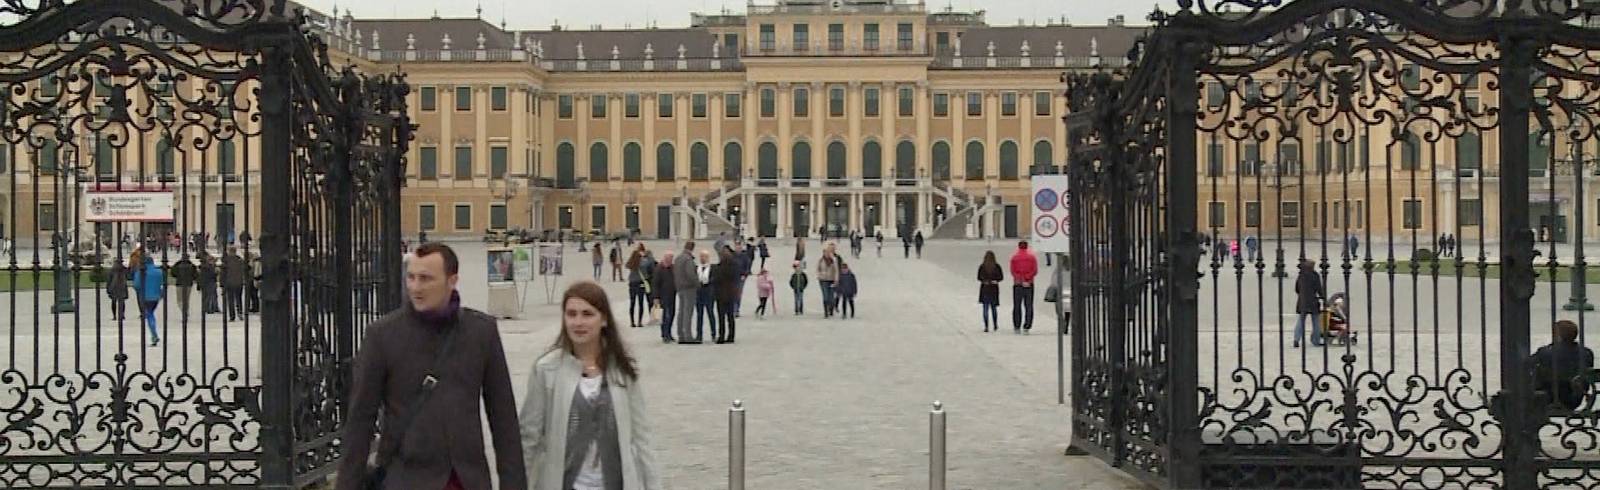 Wien Tourismus jubelt über Nächtigungs-Rekord